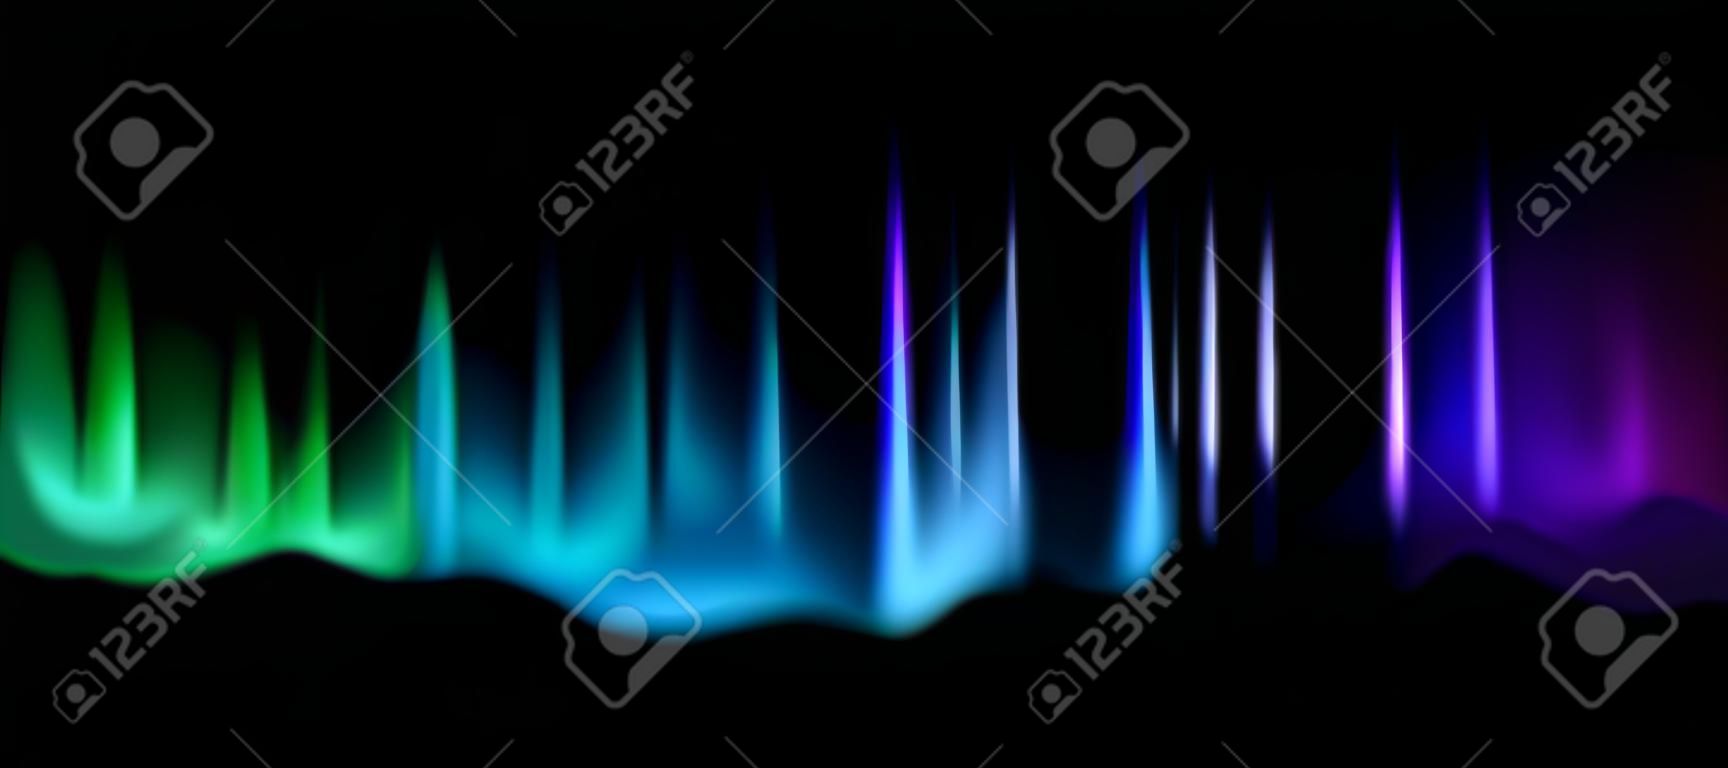 Nordlichter. Aurora Borealis erstaunliche Polarlichter am Nachthimmel, magische Lumineszenz lebendiger arktischer Effekt, grün-blauer und violetter Farbverlauf Polarraum glänzen Vektor abstrakte realistische Illustration